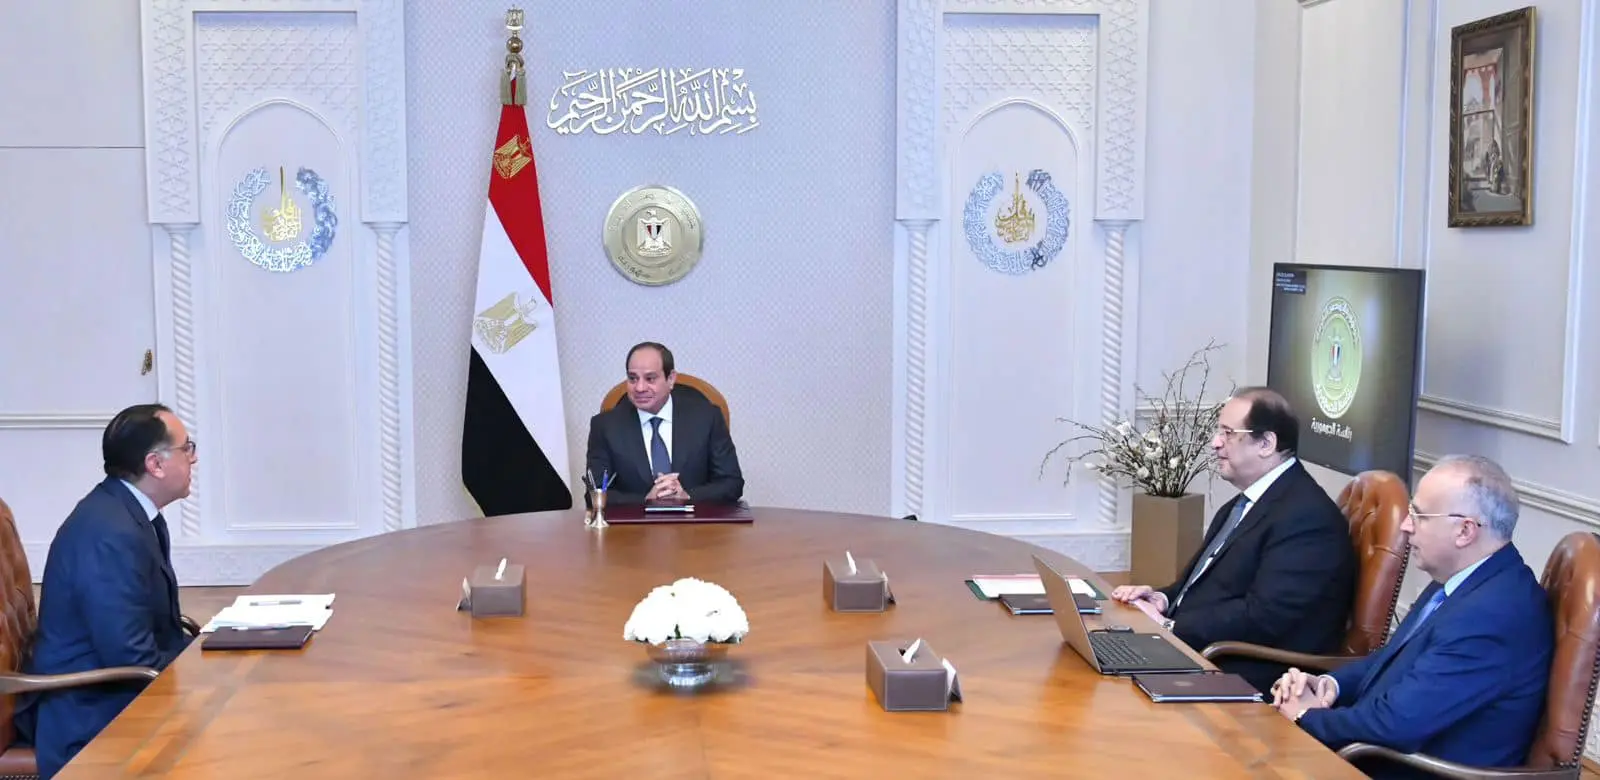 الرئيس السيسى يجتمع بهؤلاء القادة على رأسهم رئيسا الحكومة والمخابرات